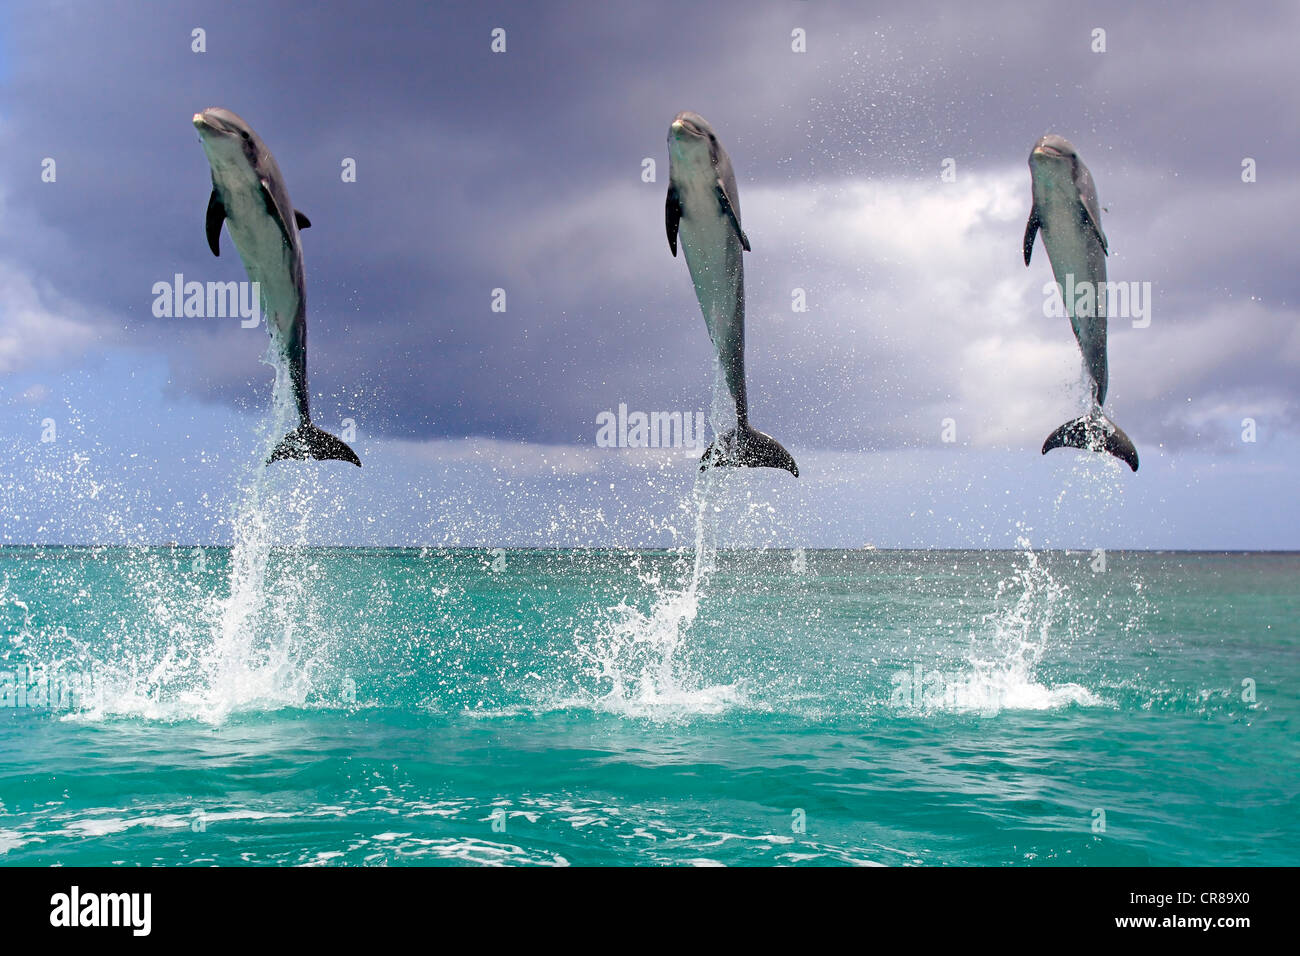 Tres delfines nariz de botella (Tursiops truncatus), adulto, saltando fuera del mar, Roatán, Honduras, El Caribe, América Central Foto de stock